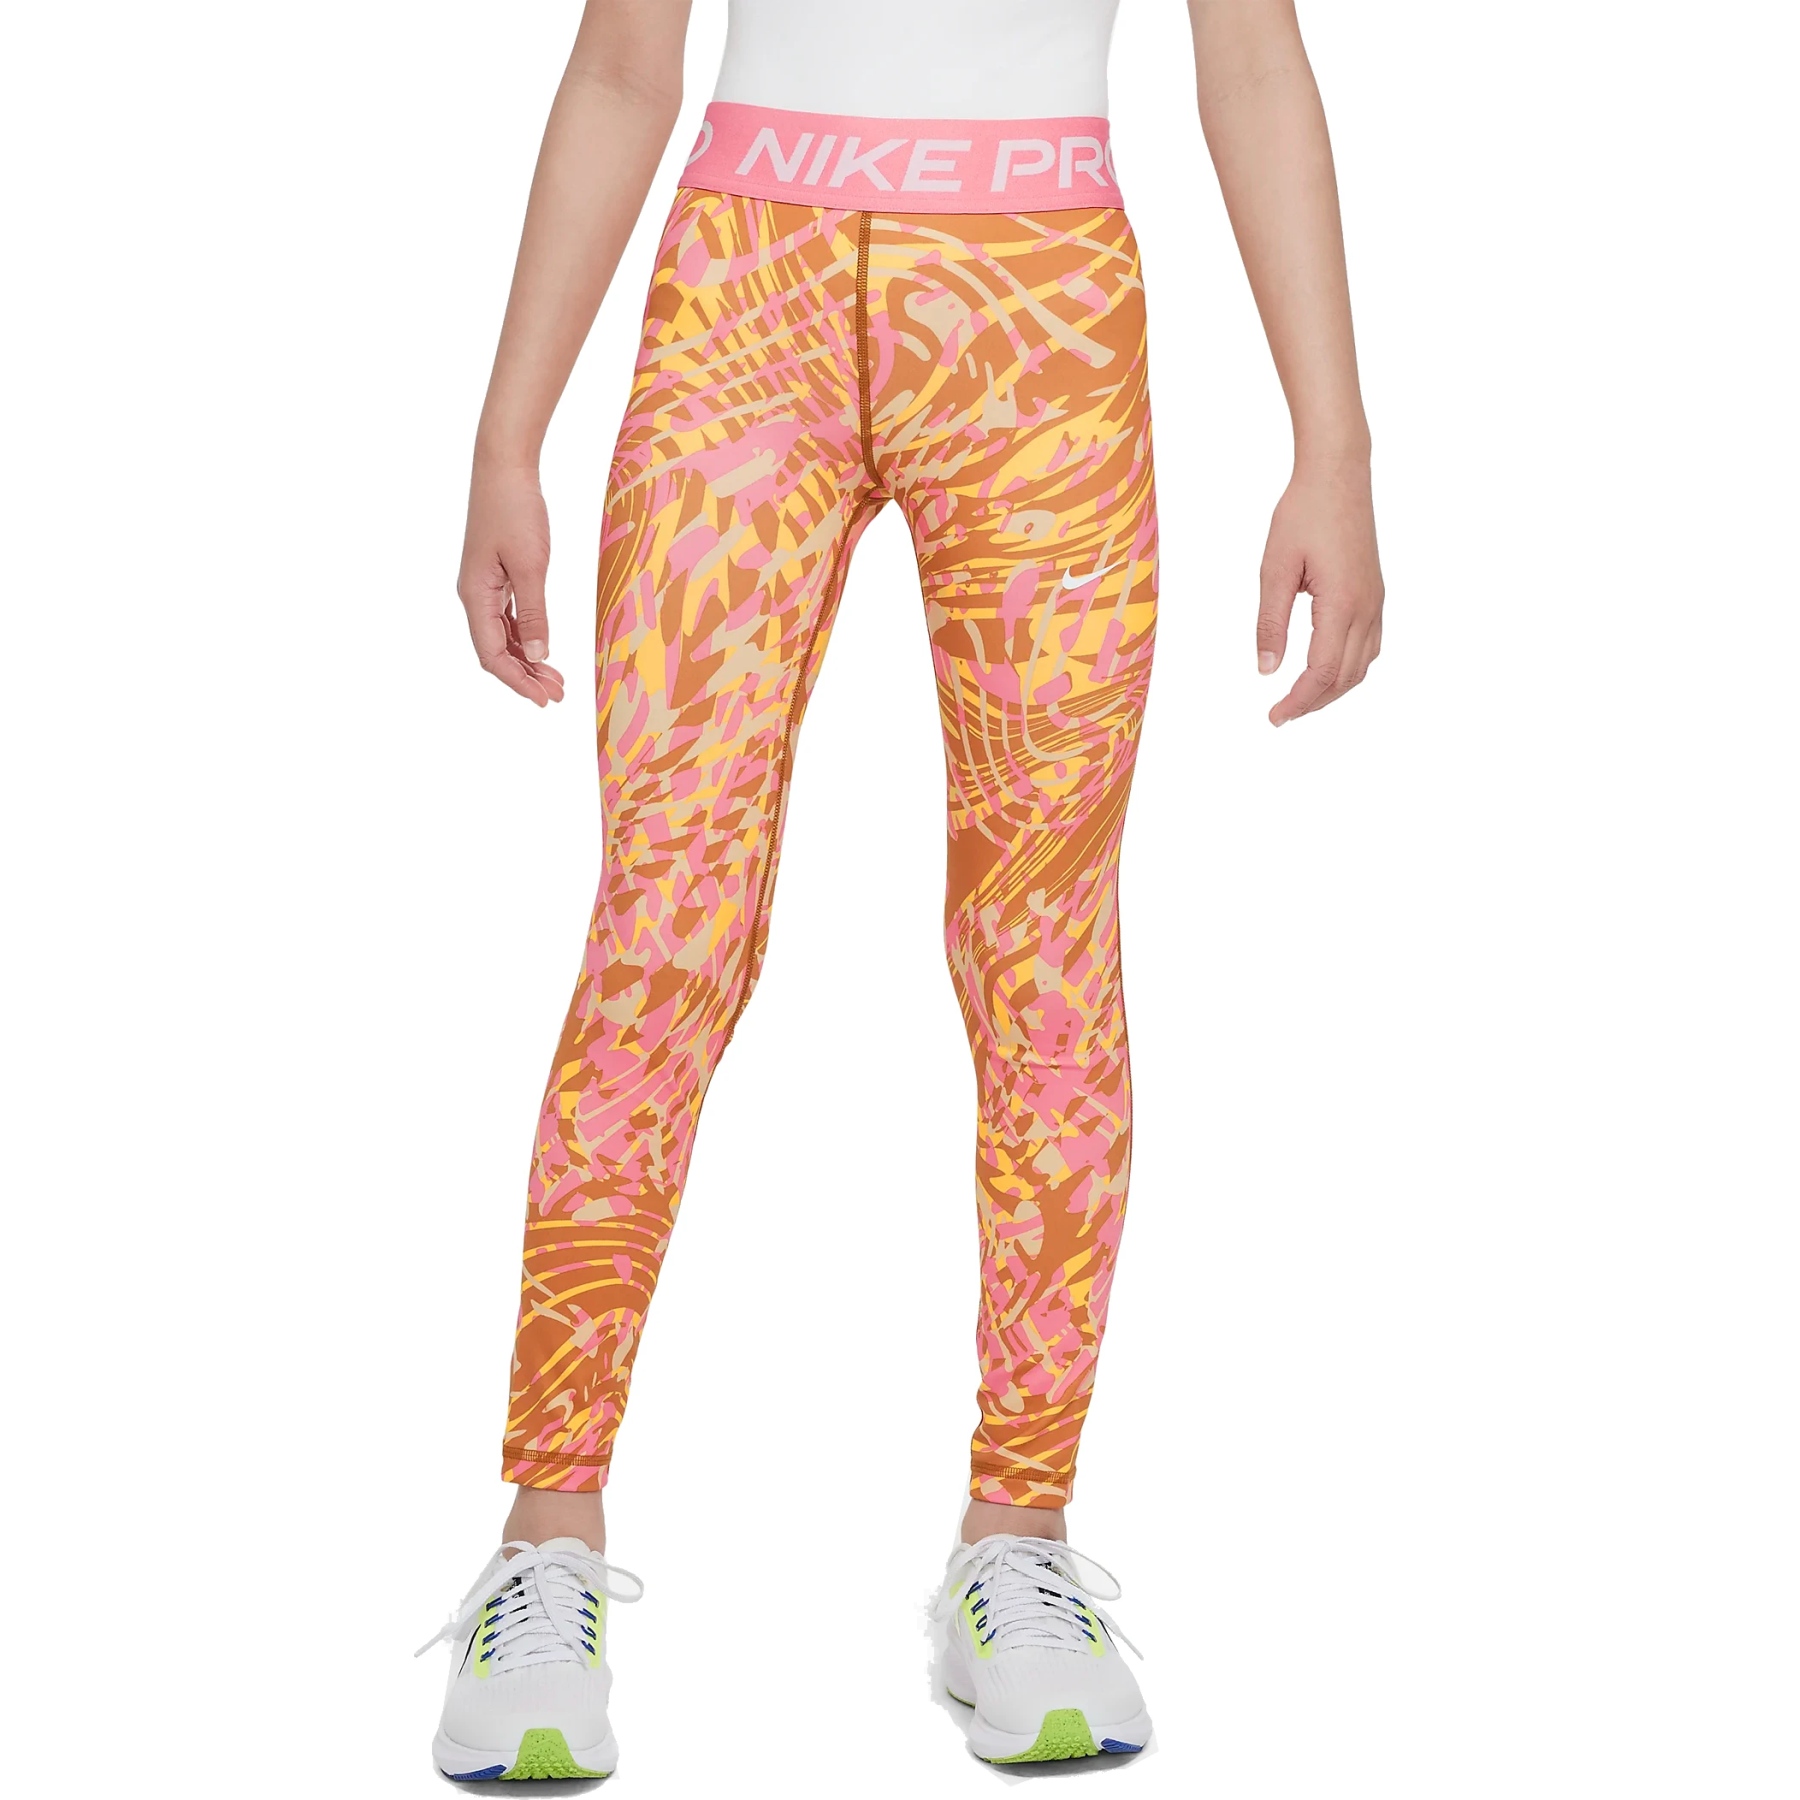 Immagine di Nike Leggings Bambini - Pro - monarch/coral chalk/white DX4987-815